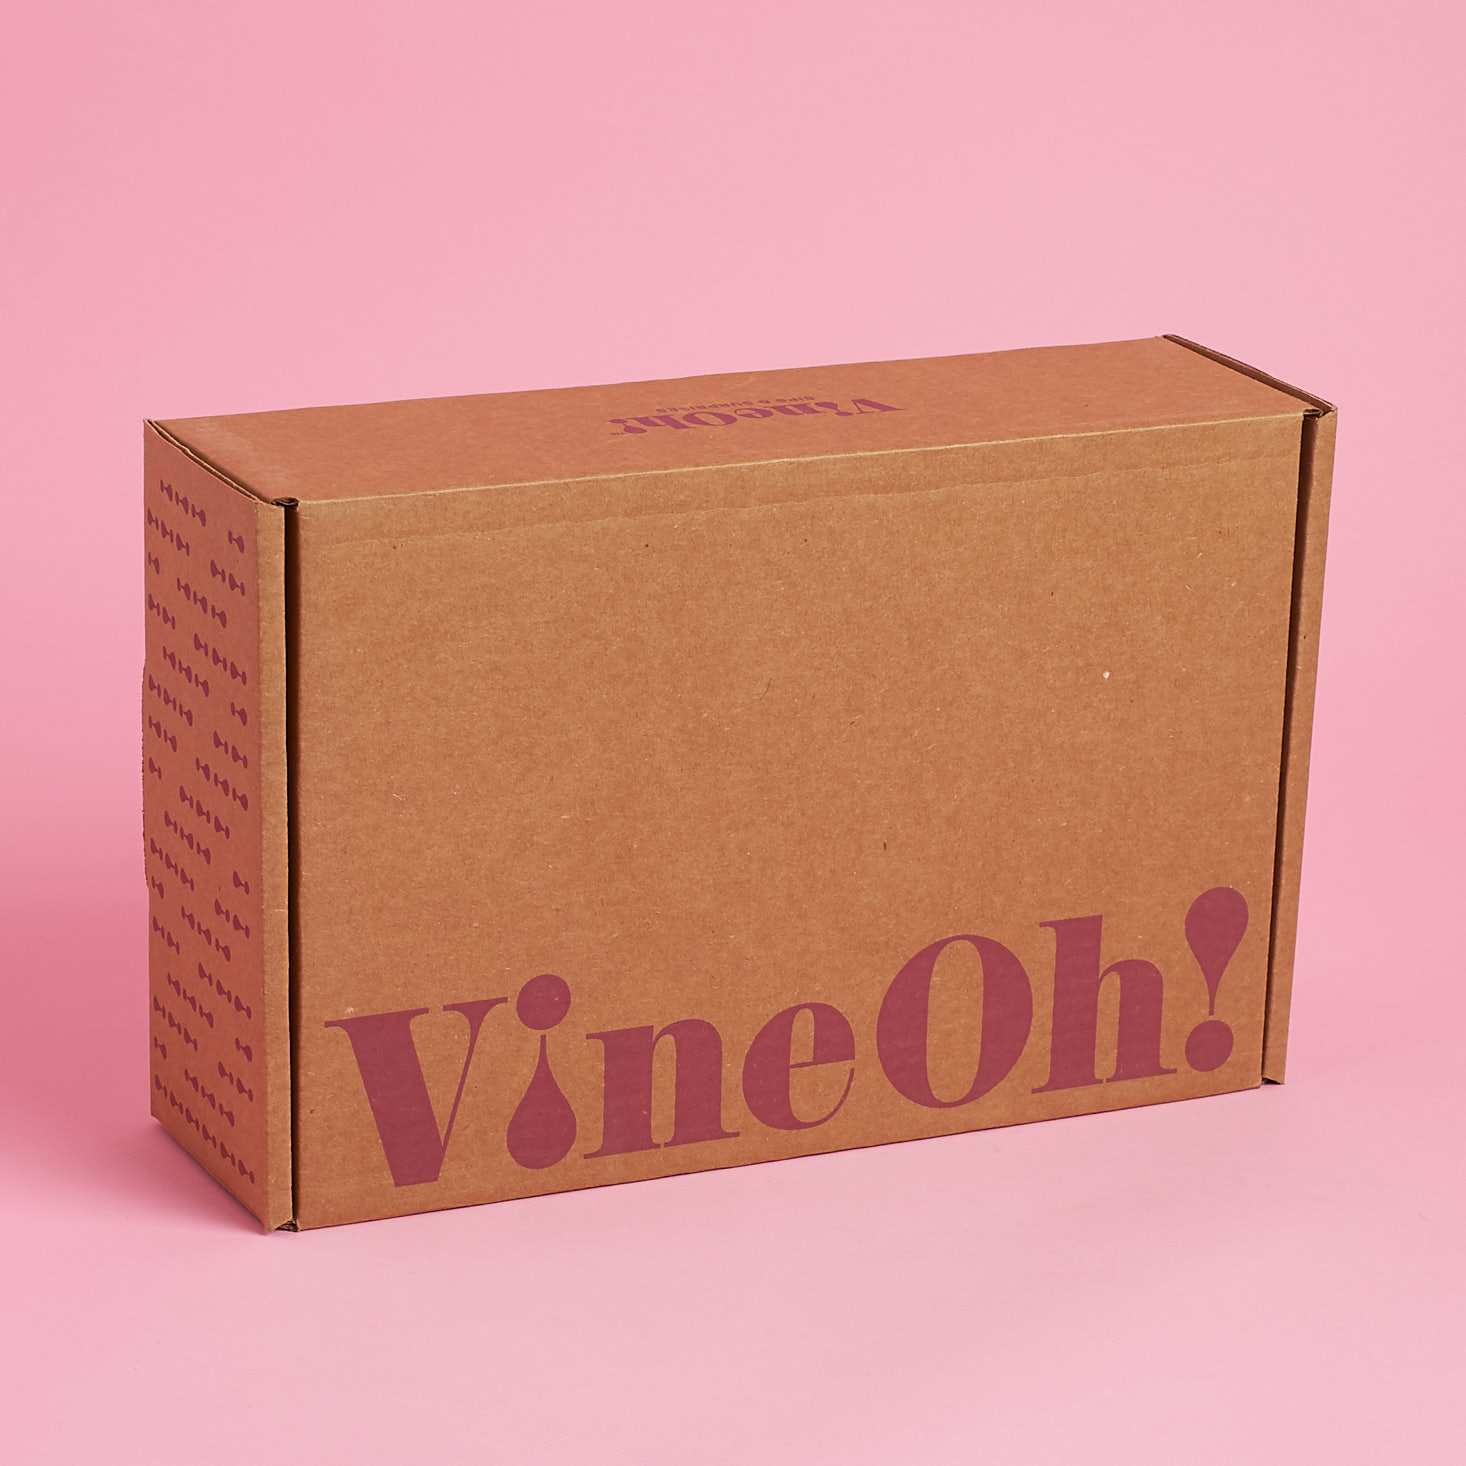 VineOh! Oh La La! Winter Wine Subscription Box Review + Coupon